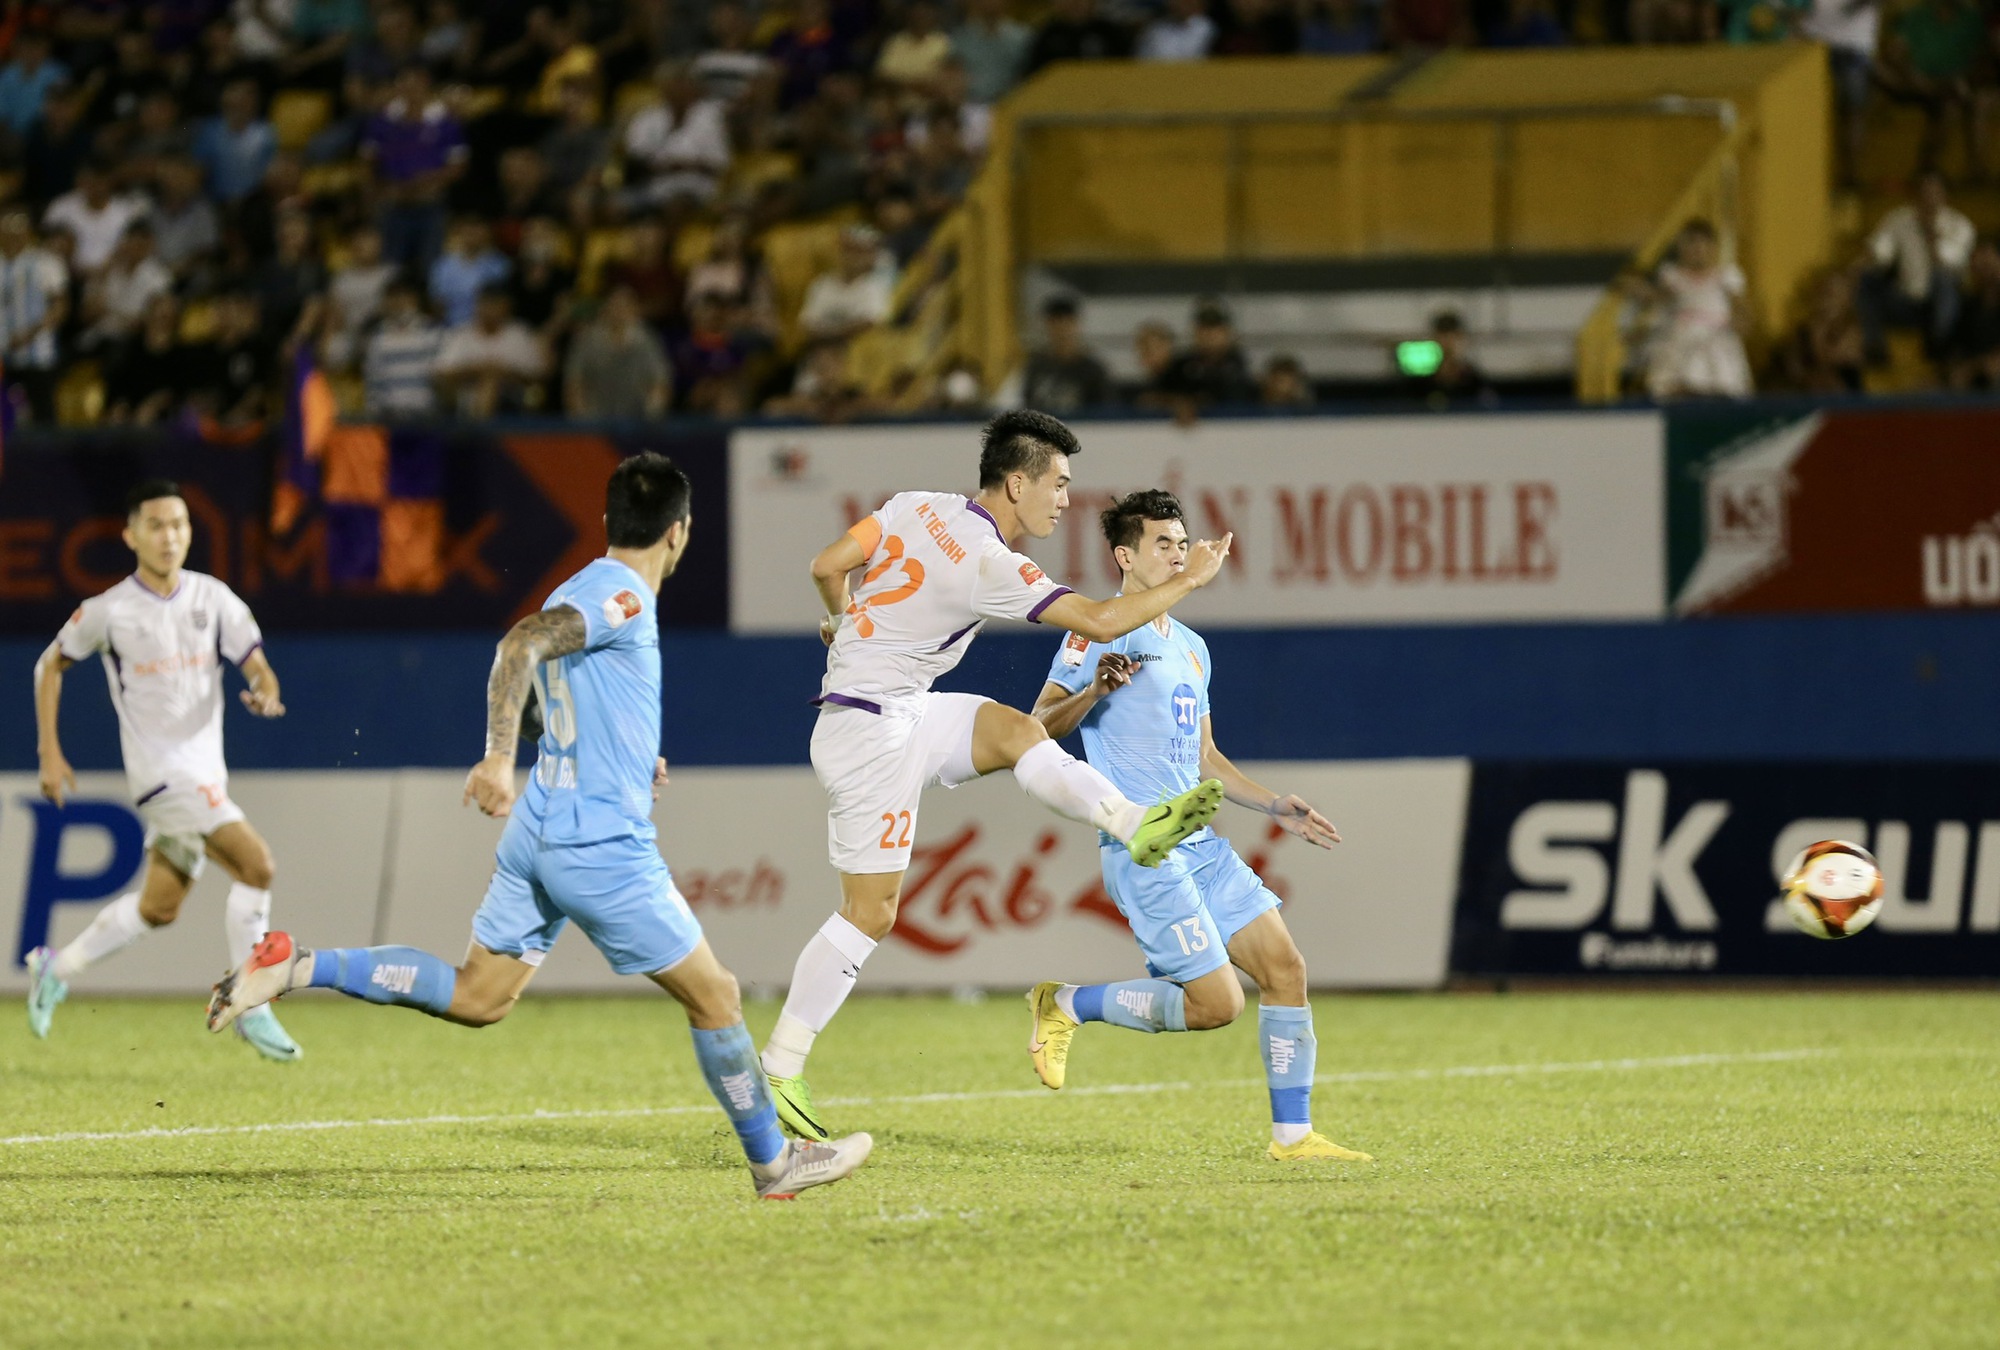 V-League: Tiến Linh tỏa sáng, HLV Huỳnh Đức cùng Bình Dương ngược dòng lên đỉnh bảng - Ảnh 4.